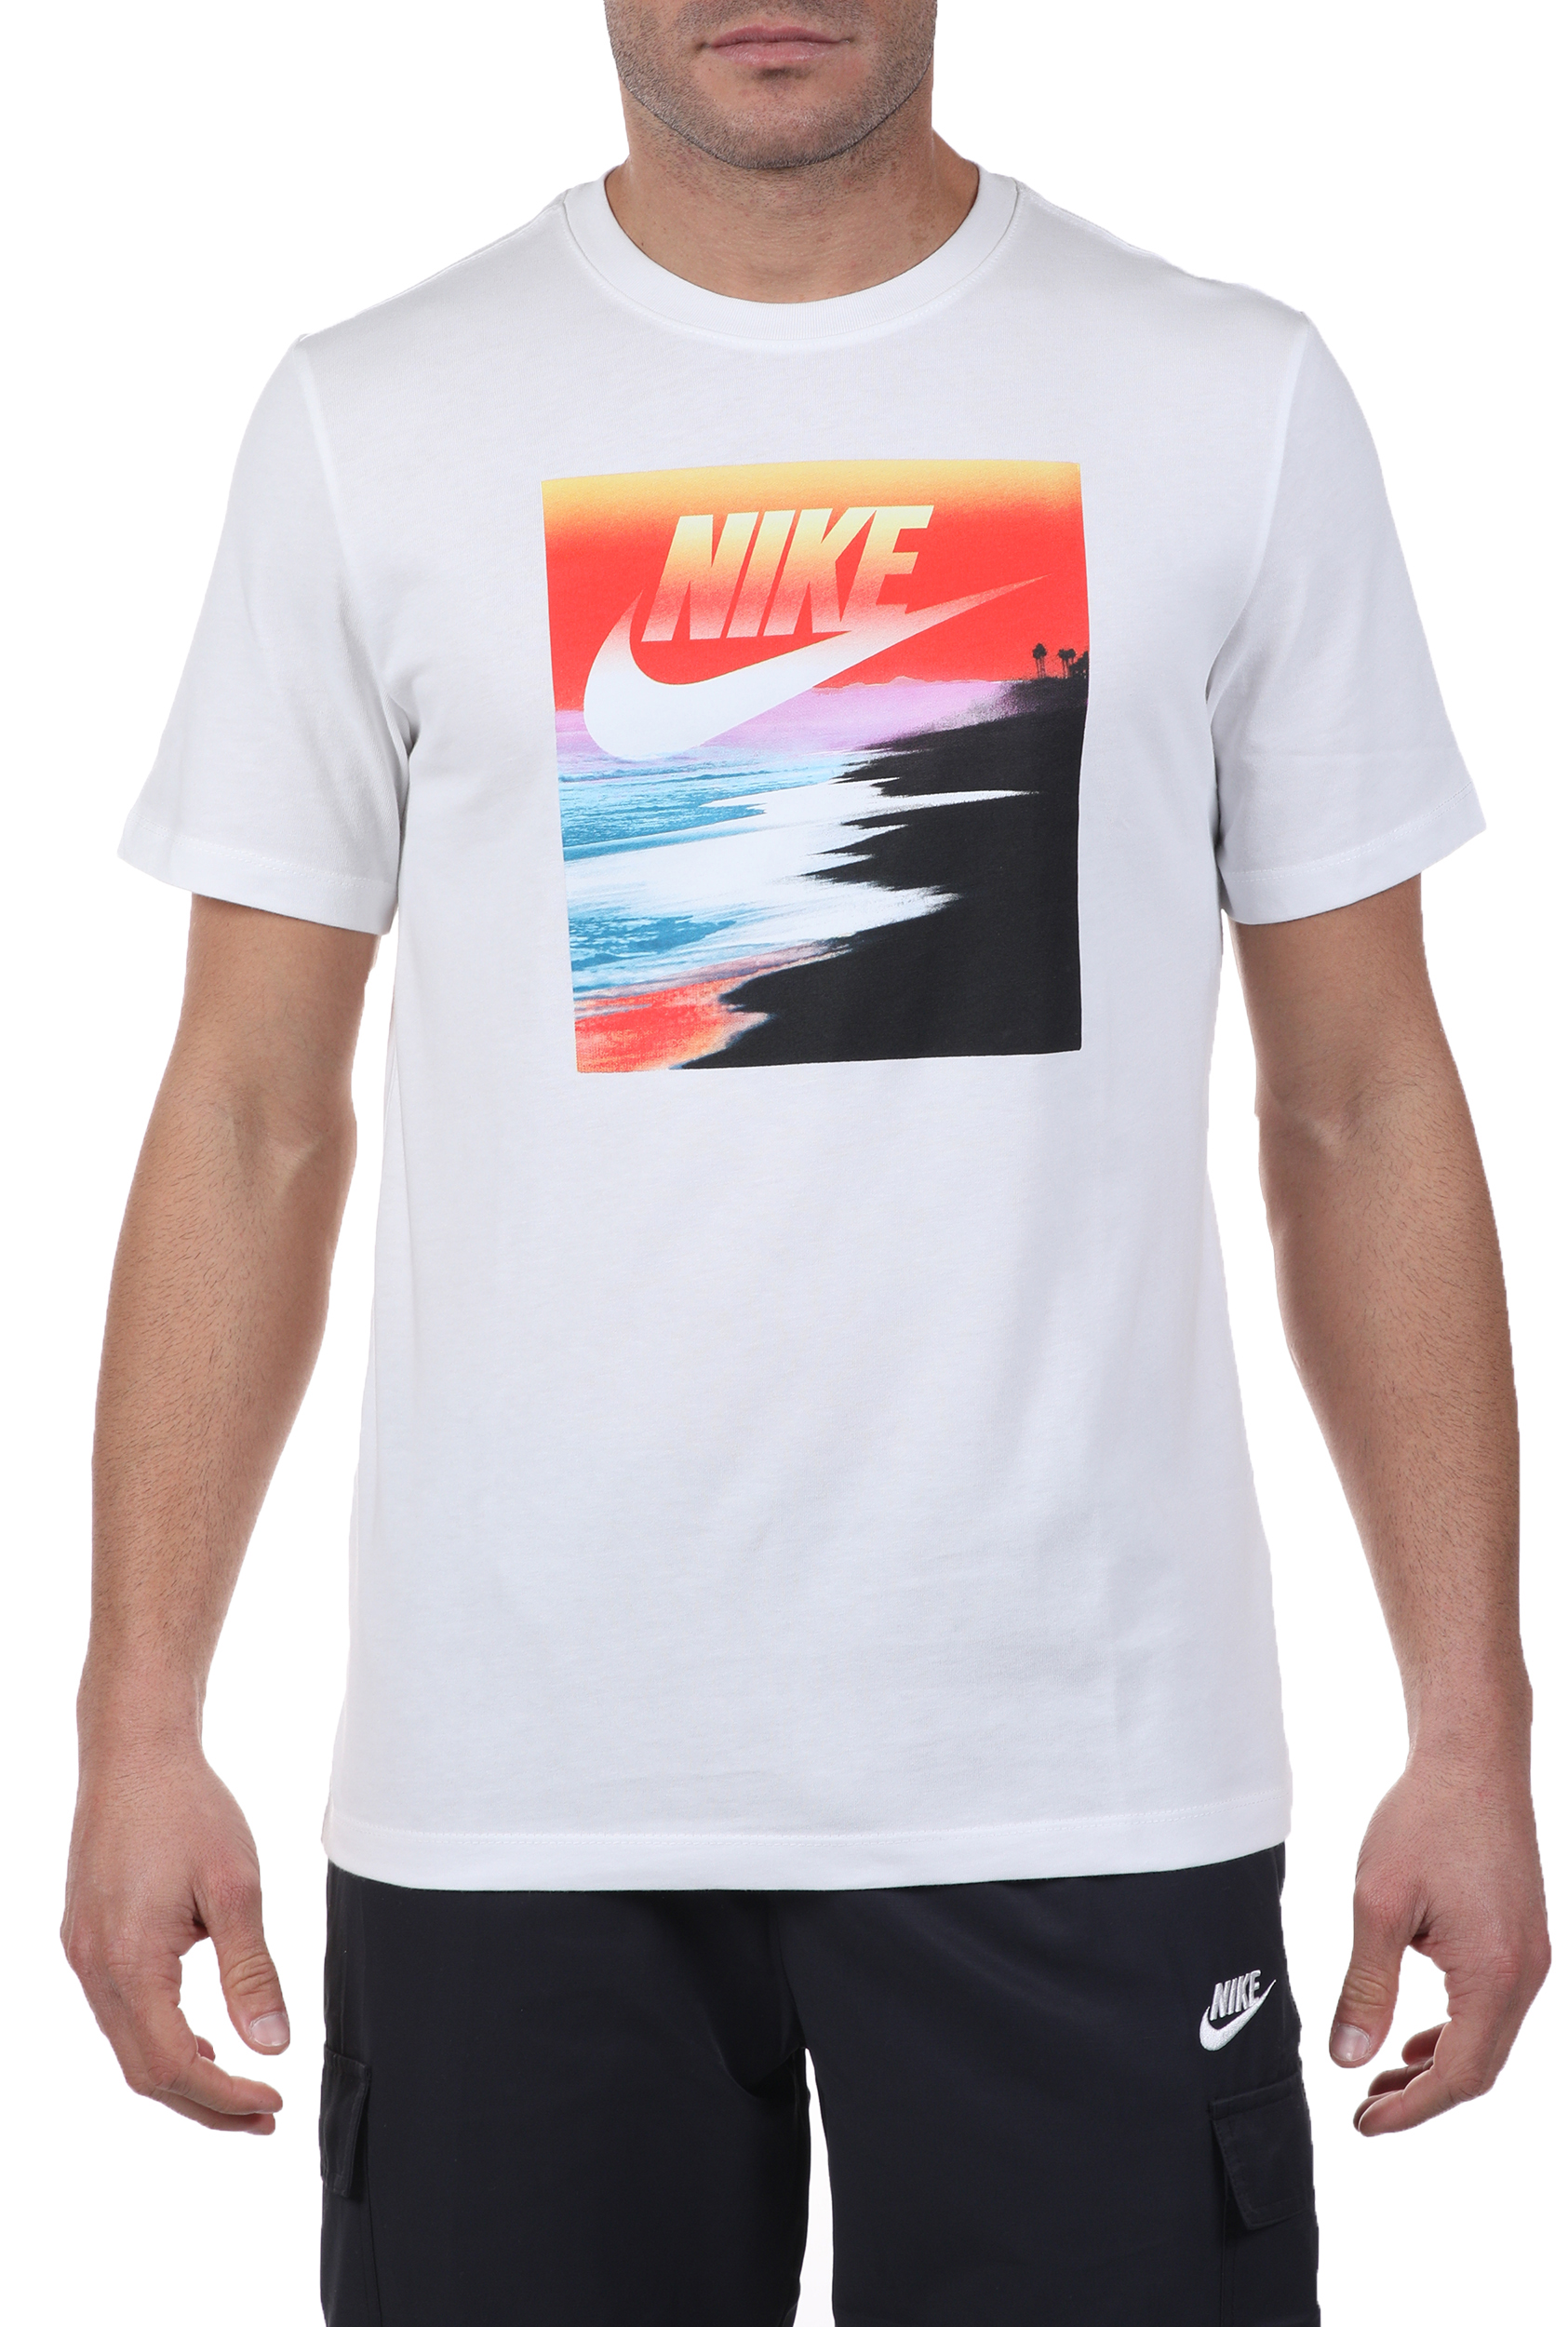 Ανδρικά/Ρούχα/Αθλητικά/T-shirt NIKE - Ανδρικό t-shirt NIKE NSW SS TEE SUMMER PHOTO 3 λευκό